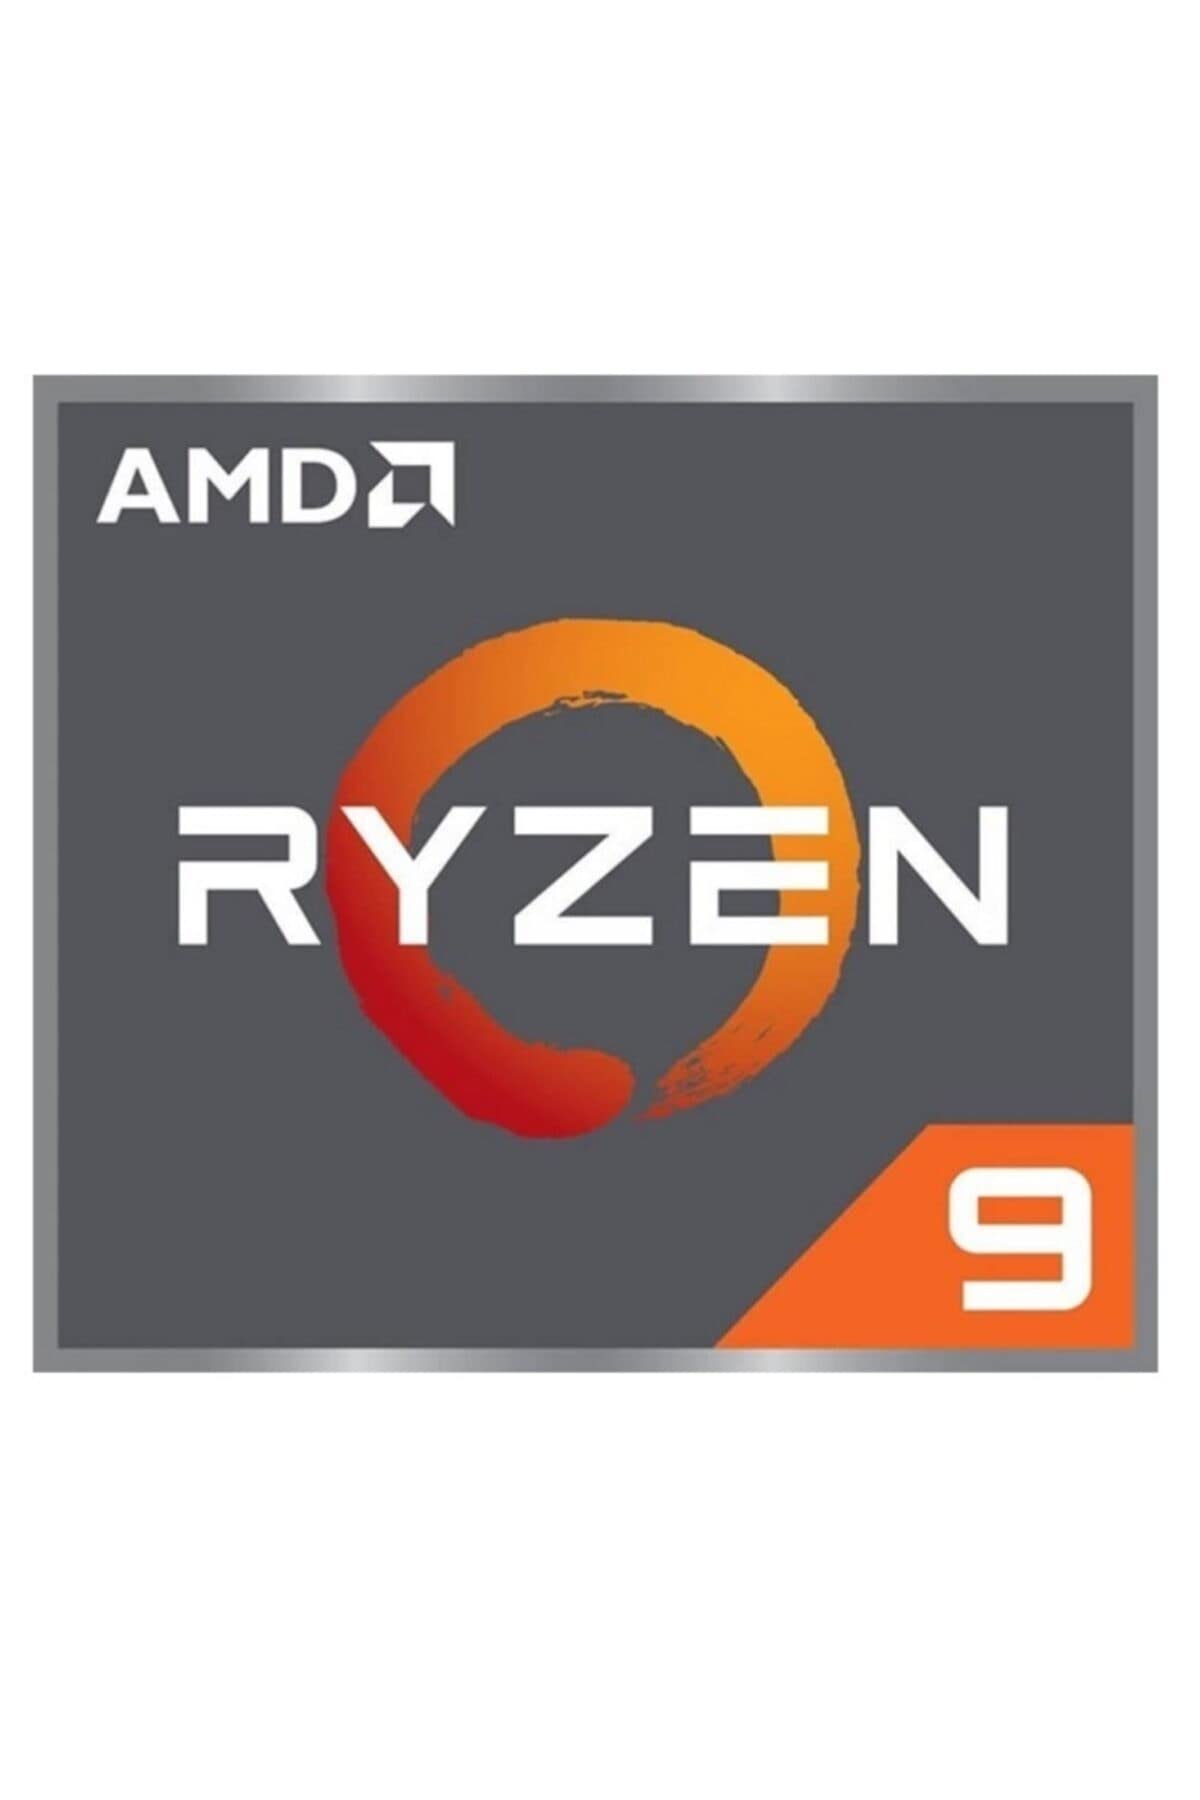 AMD Ryzen 9 5950X 16-core, 32-thread unlocked desktop processor $265